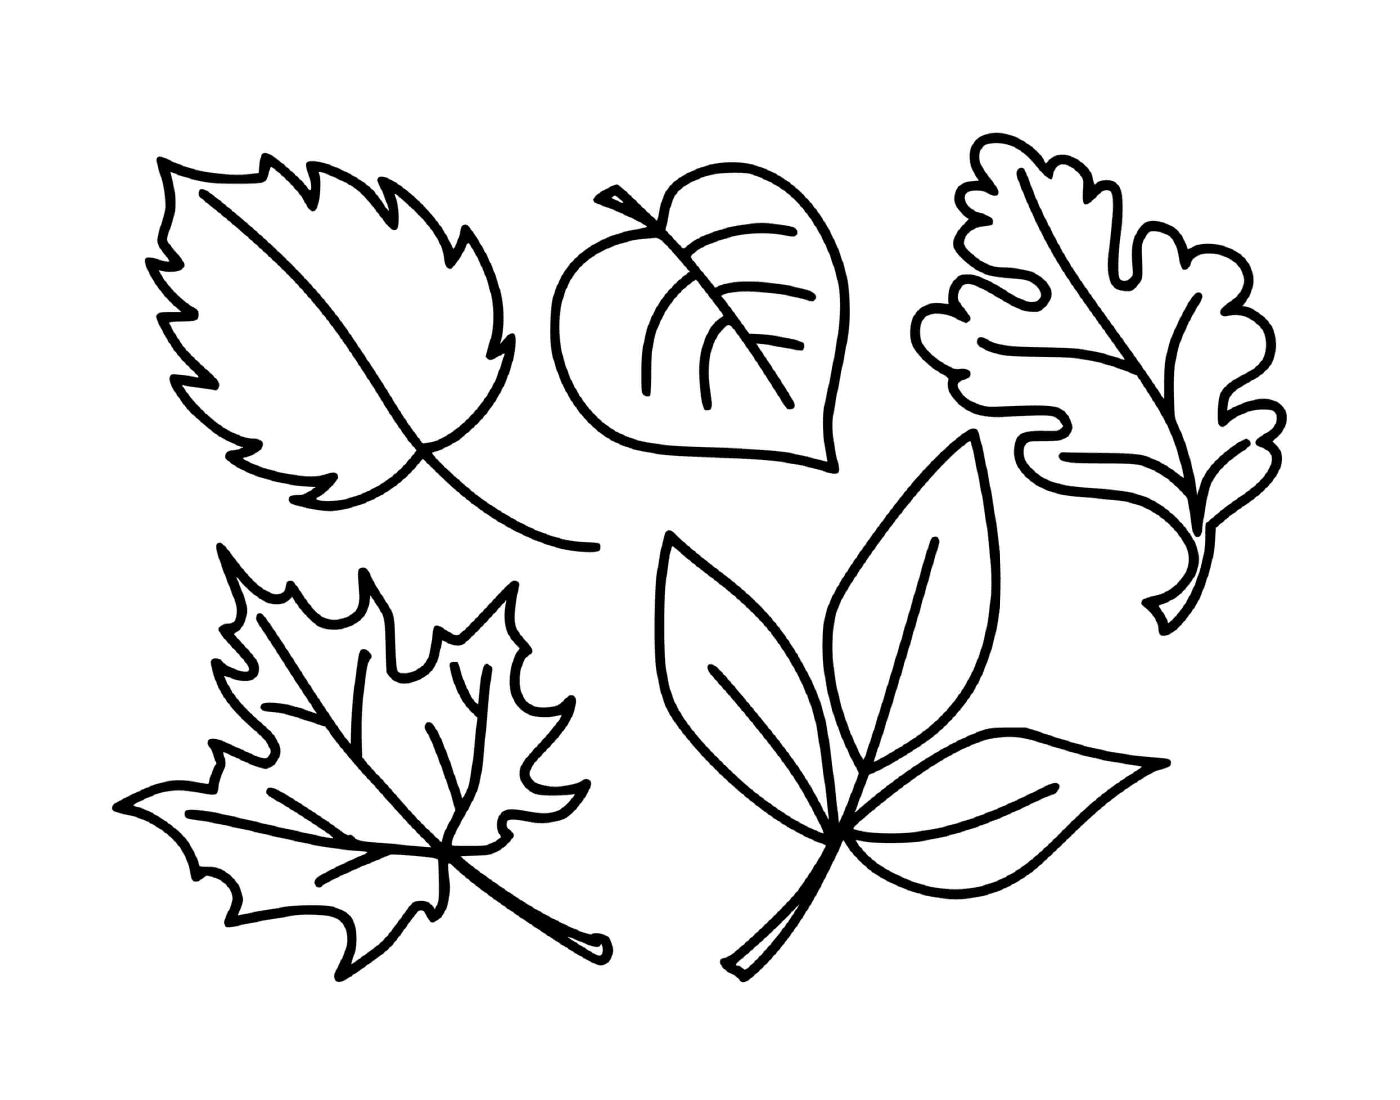   Plusieurs feuilles dessinées de la saison d'automne 